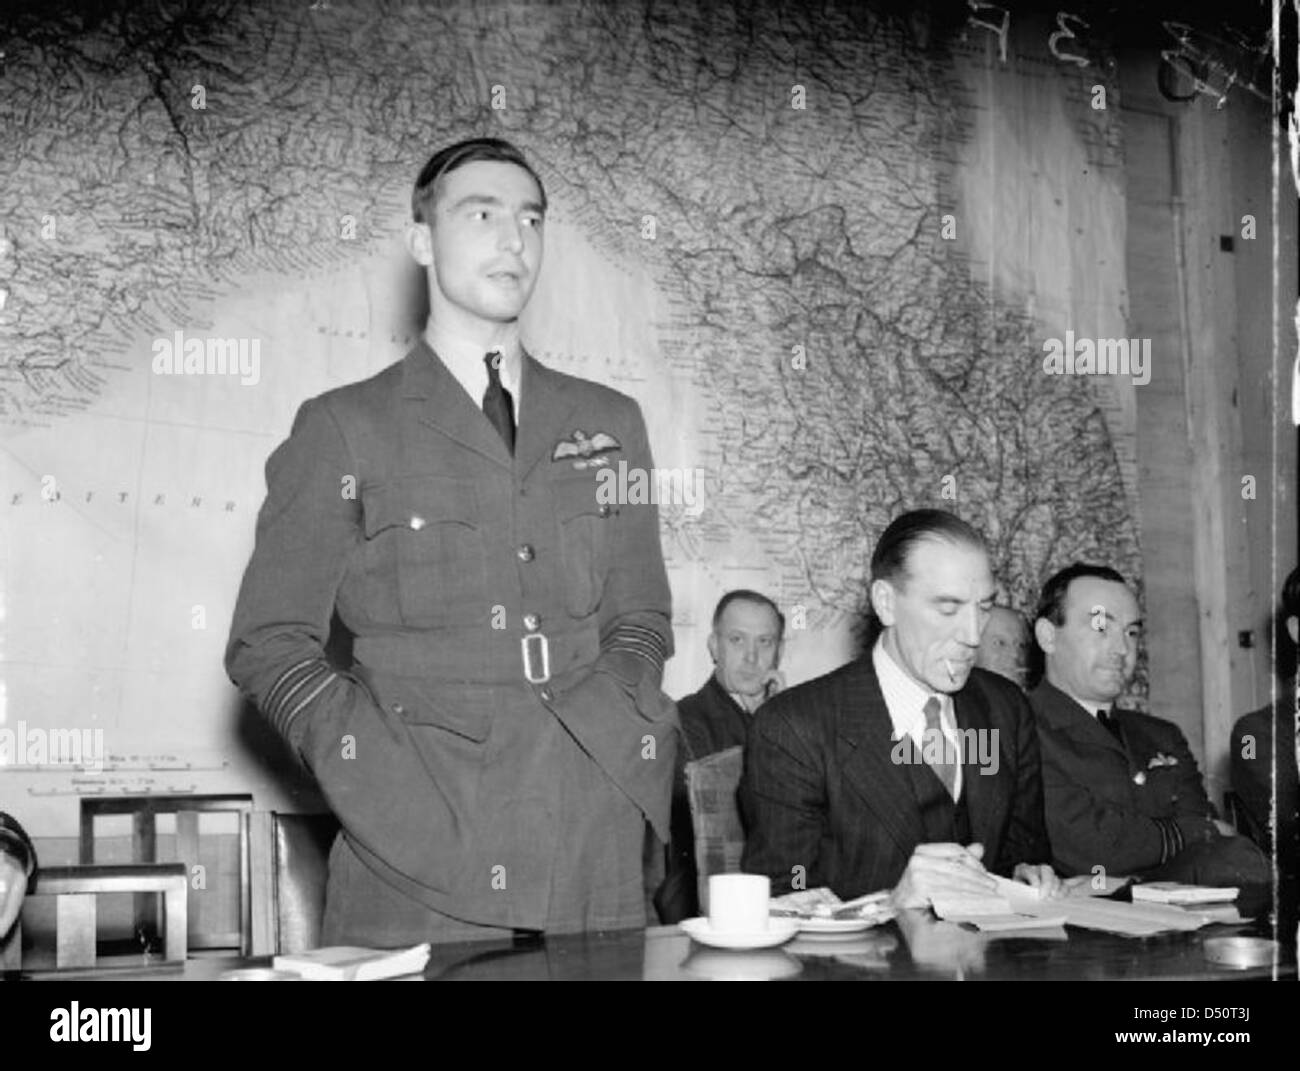 Le commandant de l'escadre, J B 'Willy' Tait, commandant du No 617 Squadron RAF, donne son compte rendu de la configuration raid effectué sur le cuirassé allemand Tirpitz à Tromso, Norvège Fjord, (opération catéchisme) le 12 novembre 1944, au cours d'une conférence de presse Banque D'Images